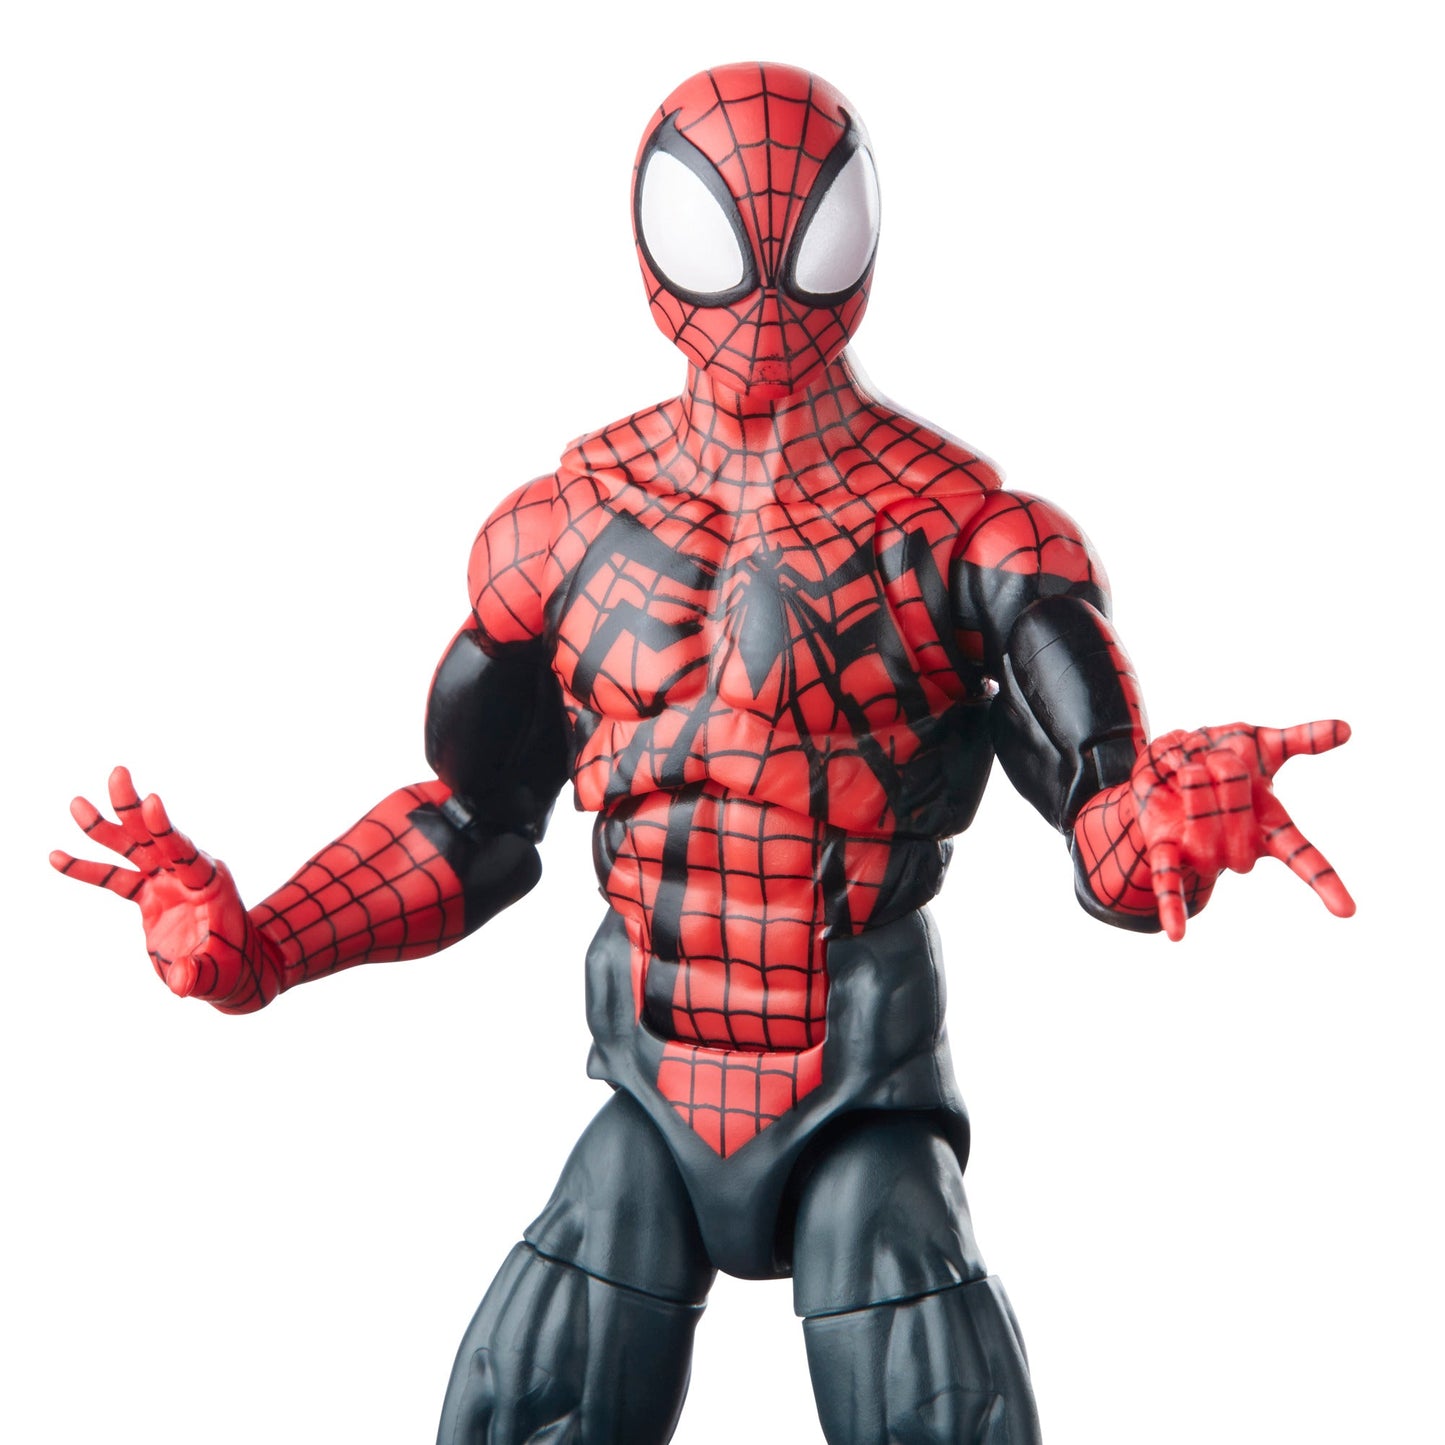 Hasbro Marvel Legends Series Ben Reilly Spider-Man